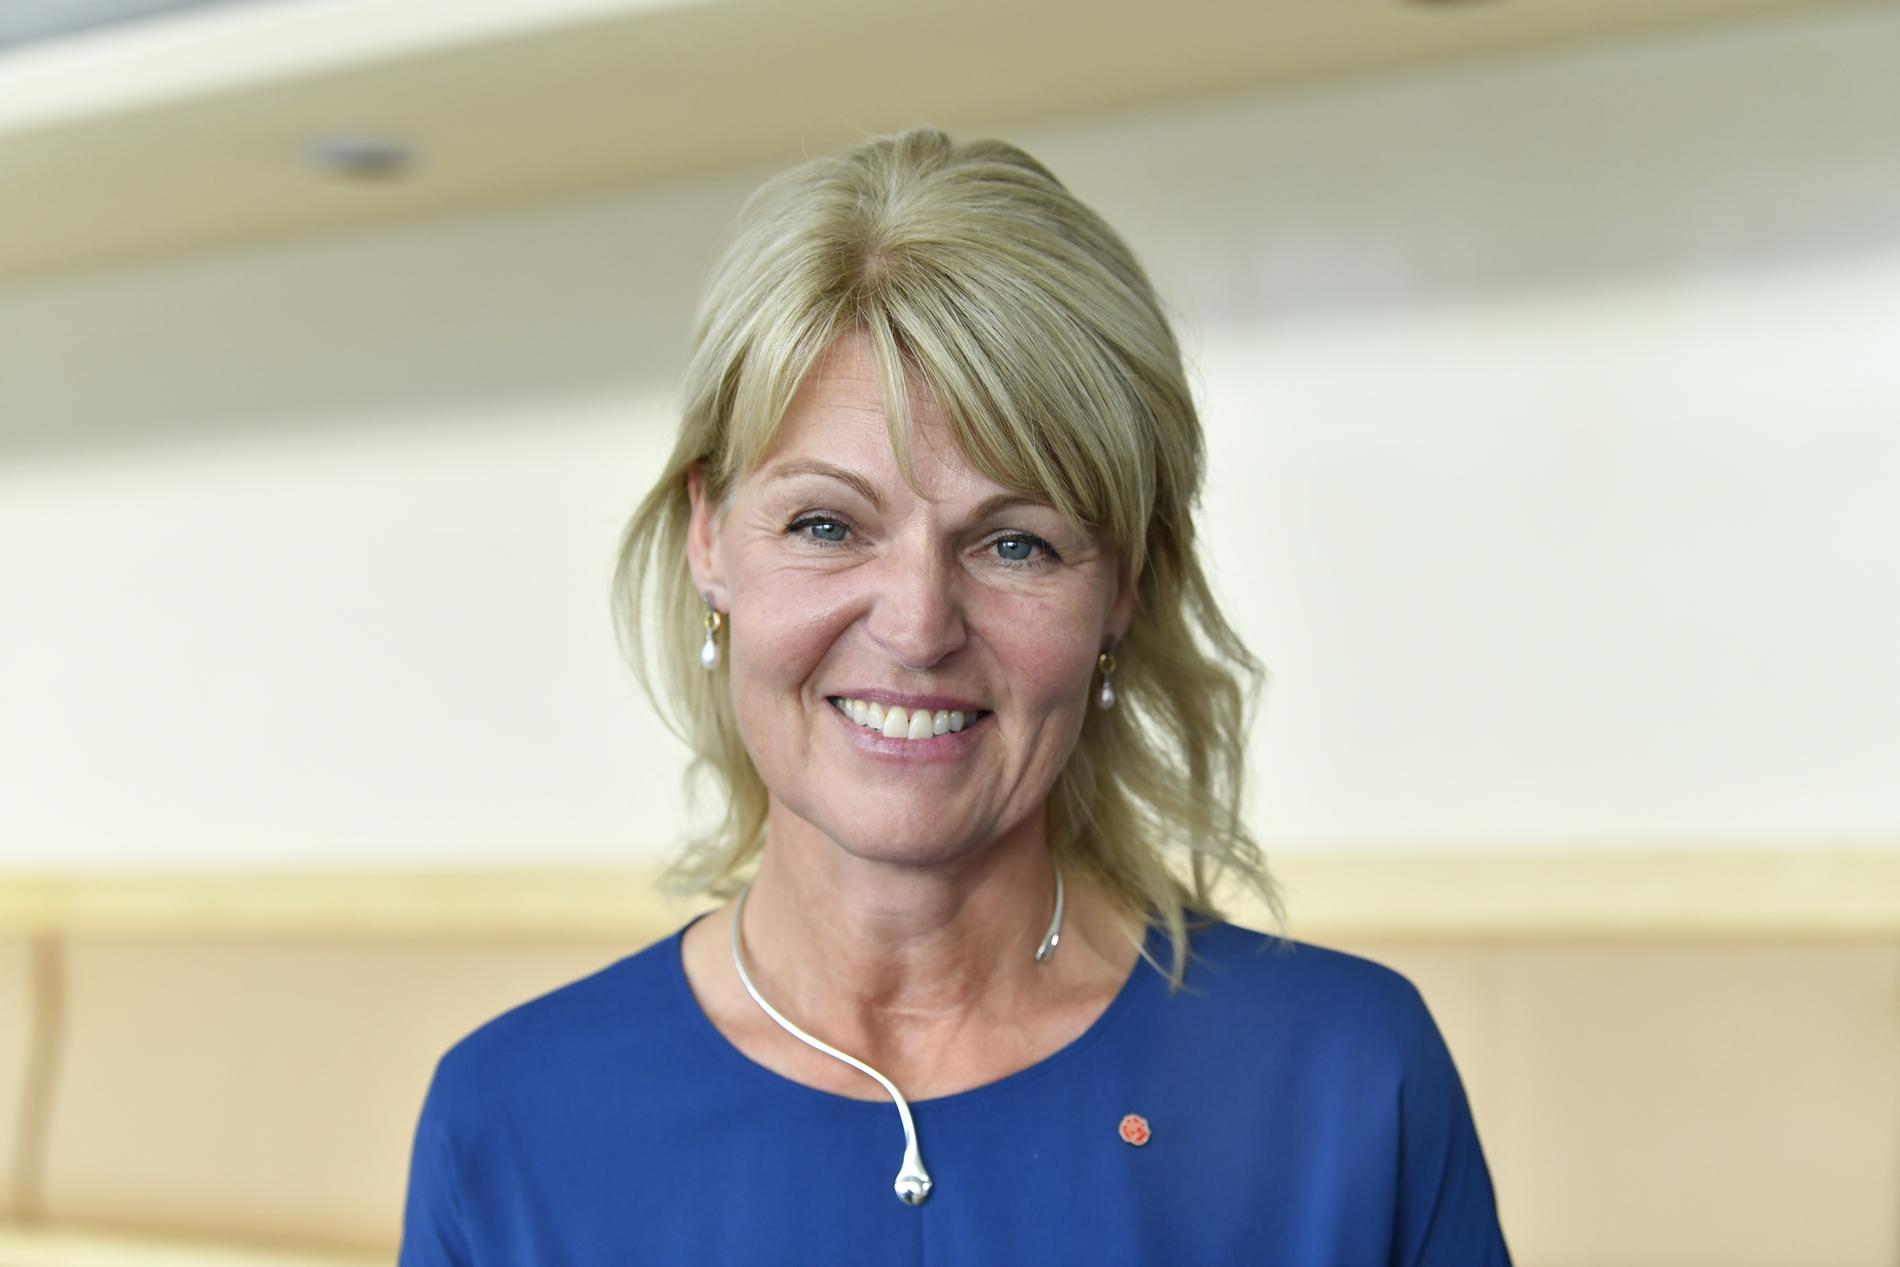 Näringslivsdoldisen Anna Hallberg tar över som utrikeshandelsminister, för dagen med en socialdemokratisk ros på klänningen, efter Ann Linde som blir utrikesminister.